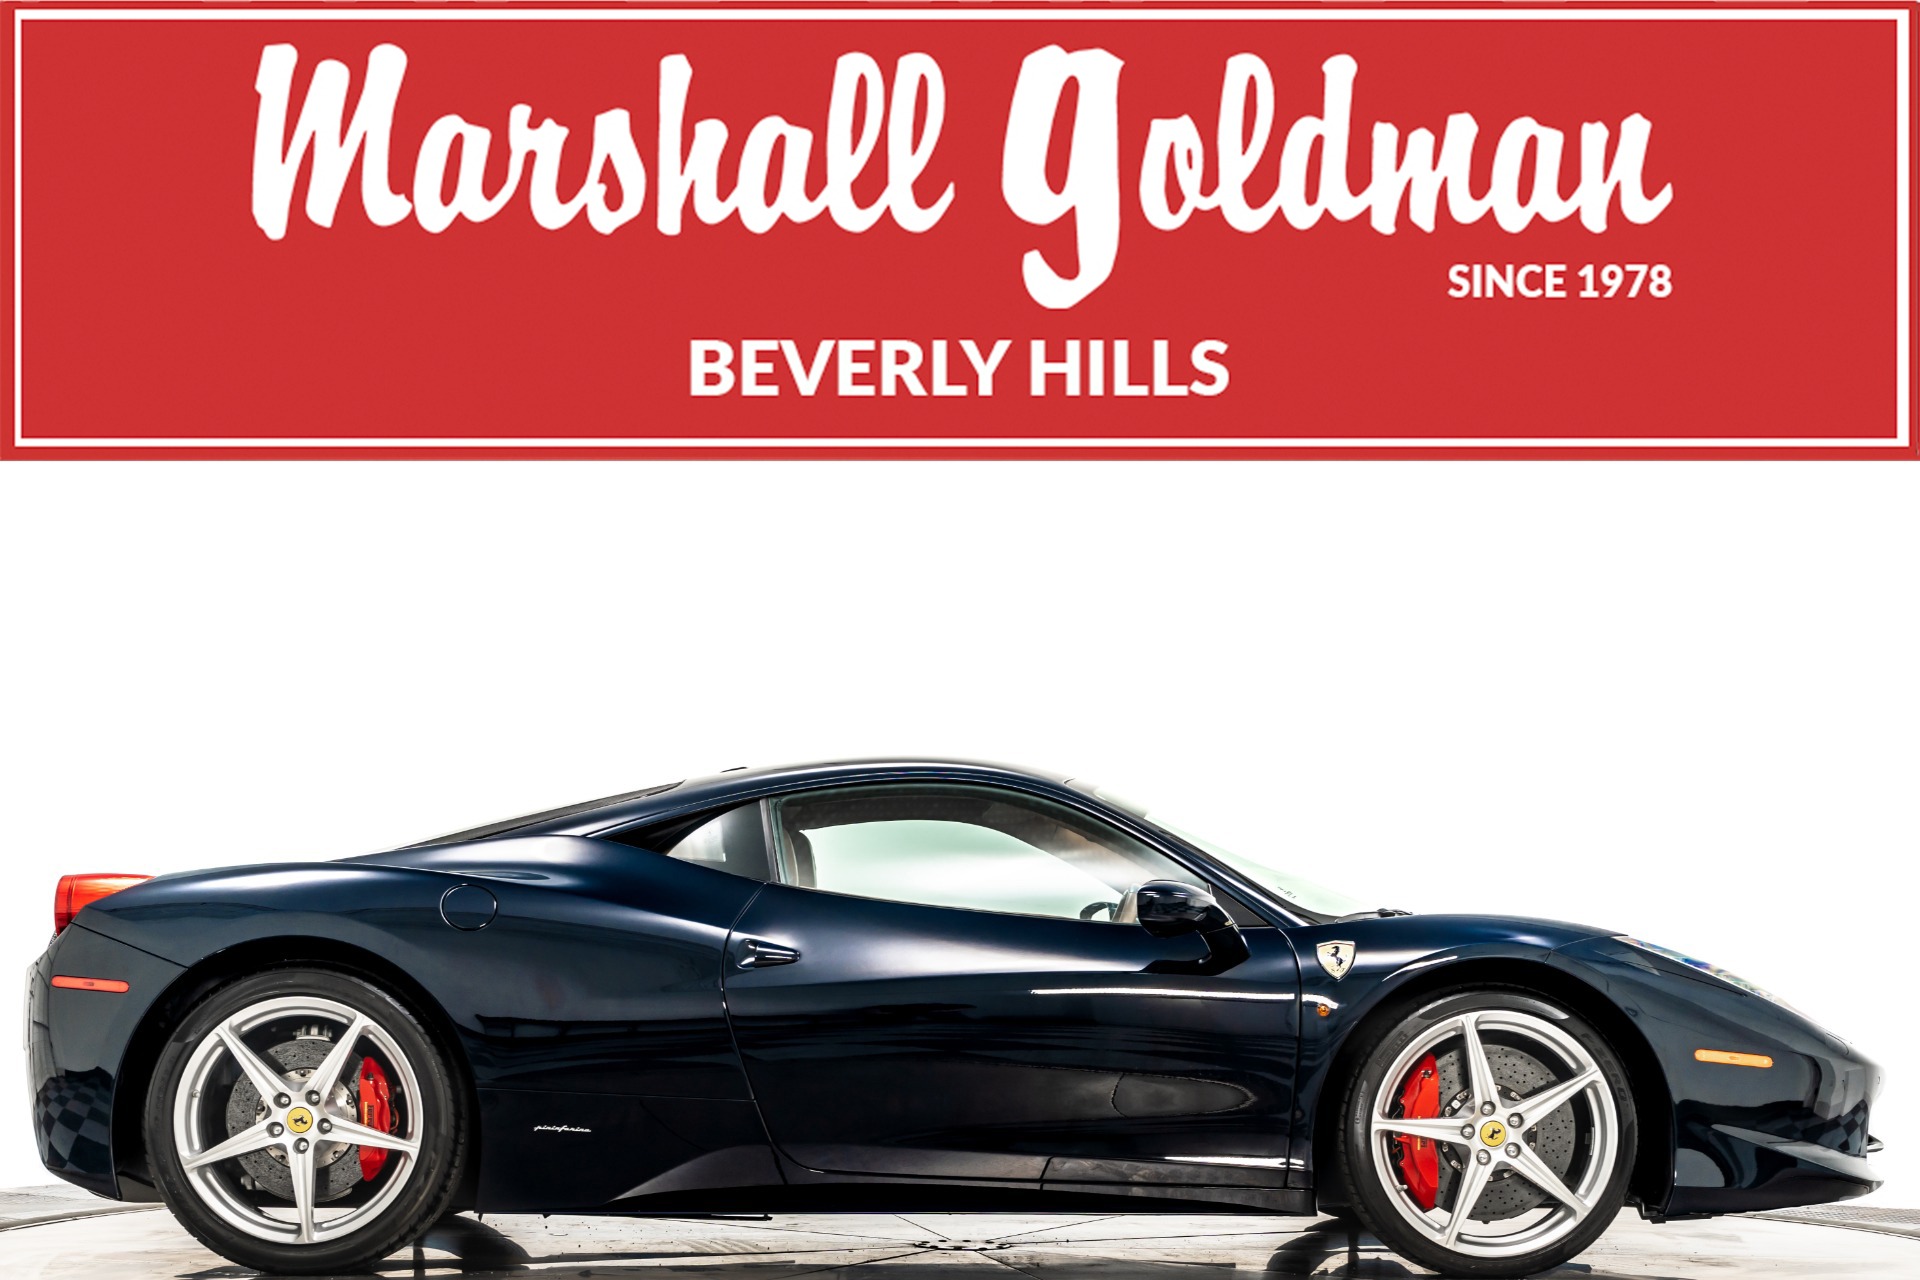 Used 2011 Ferrari 458 Italia For Sale (Sold) | Marshall Goldman 